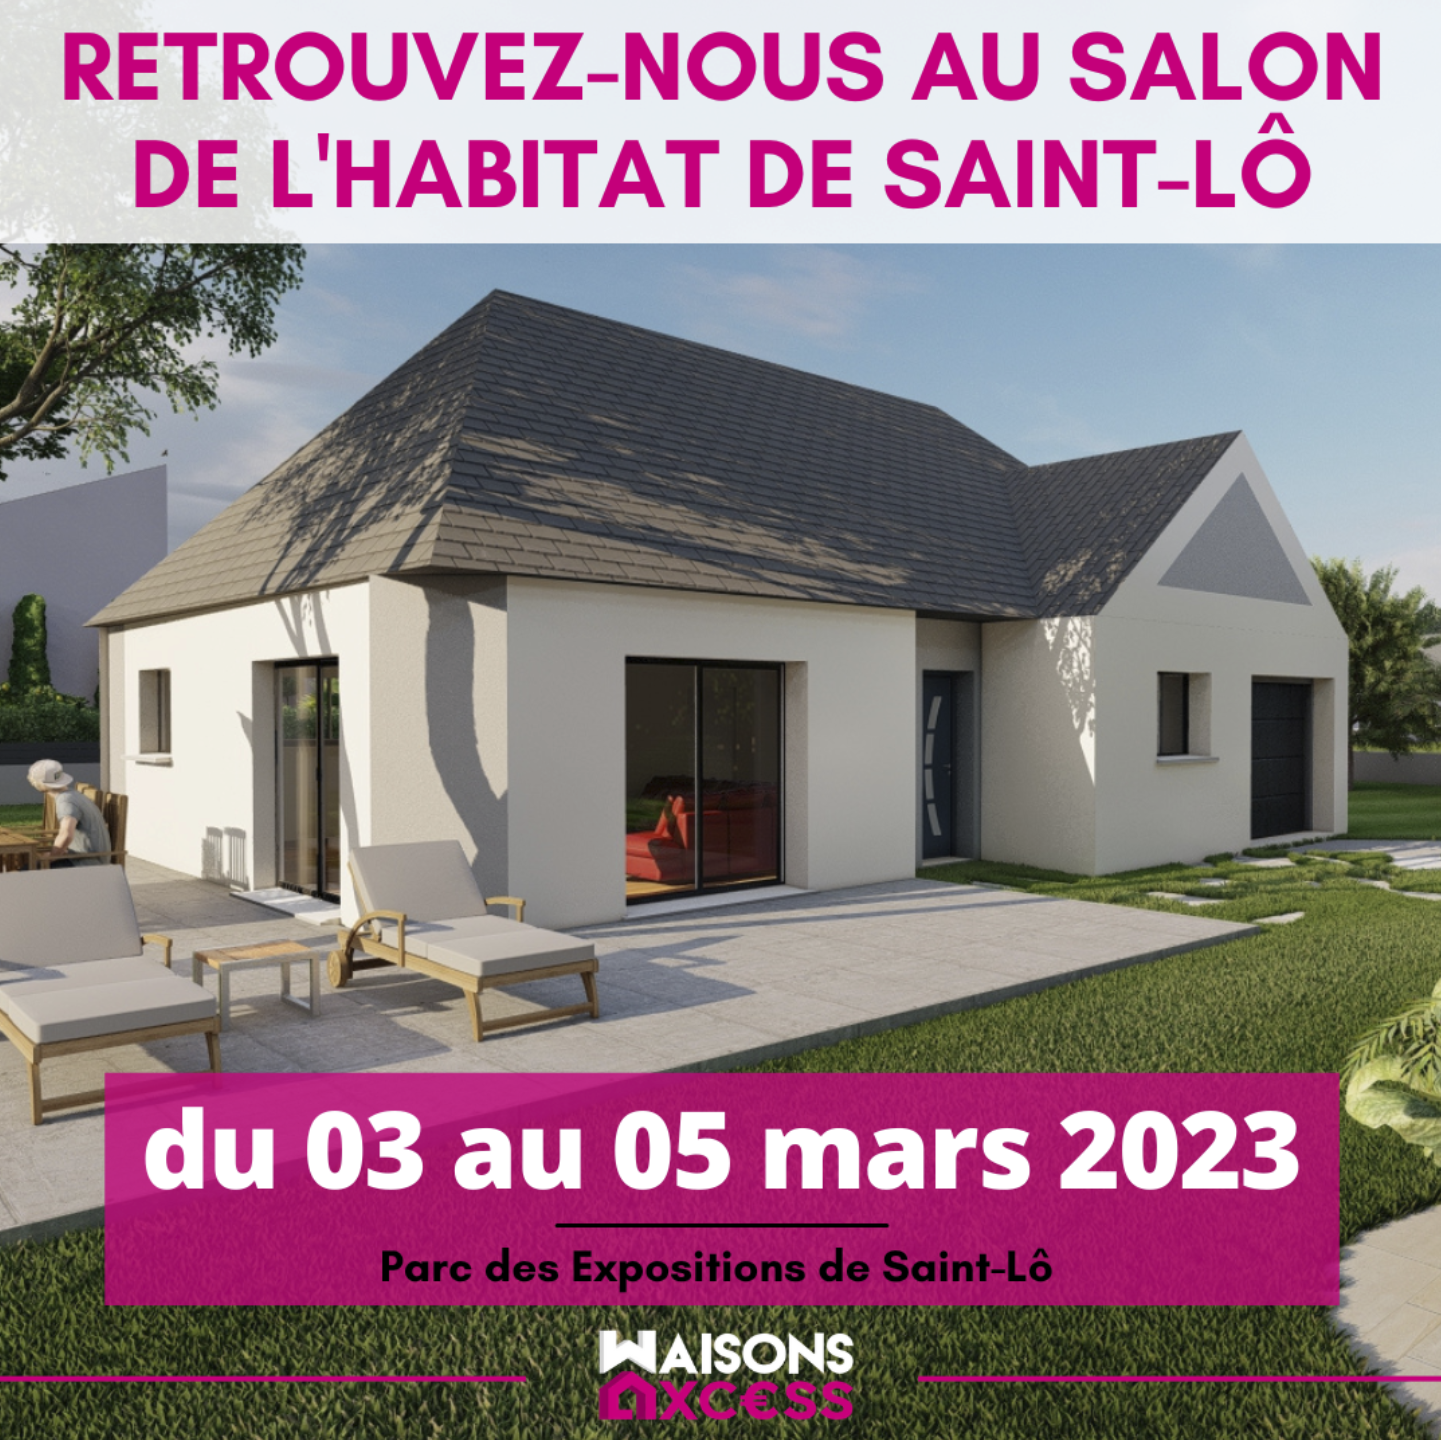 Retrouvez-nous au salon de l'habitat de Saint-Lô, du 03 mars au 05 mars 2023 - Parc des expositions de Saint-Lô.